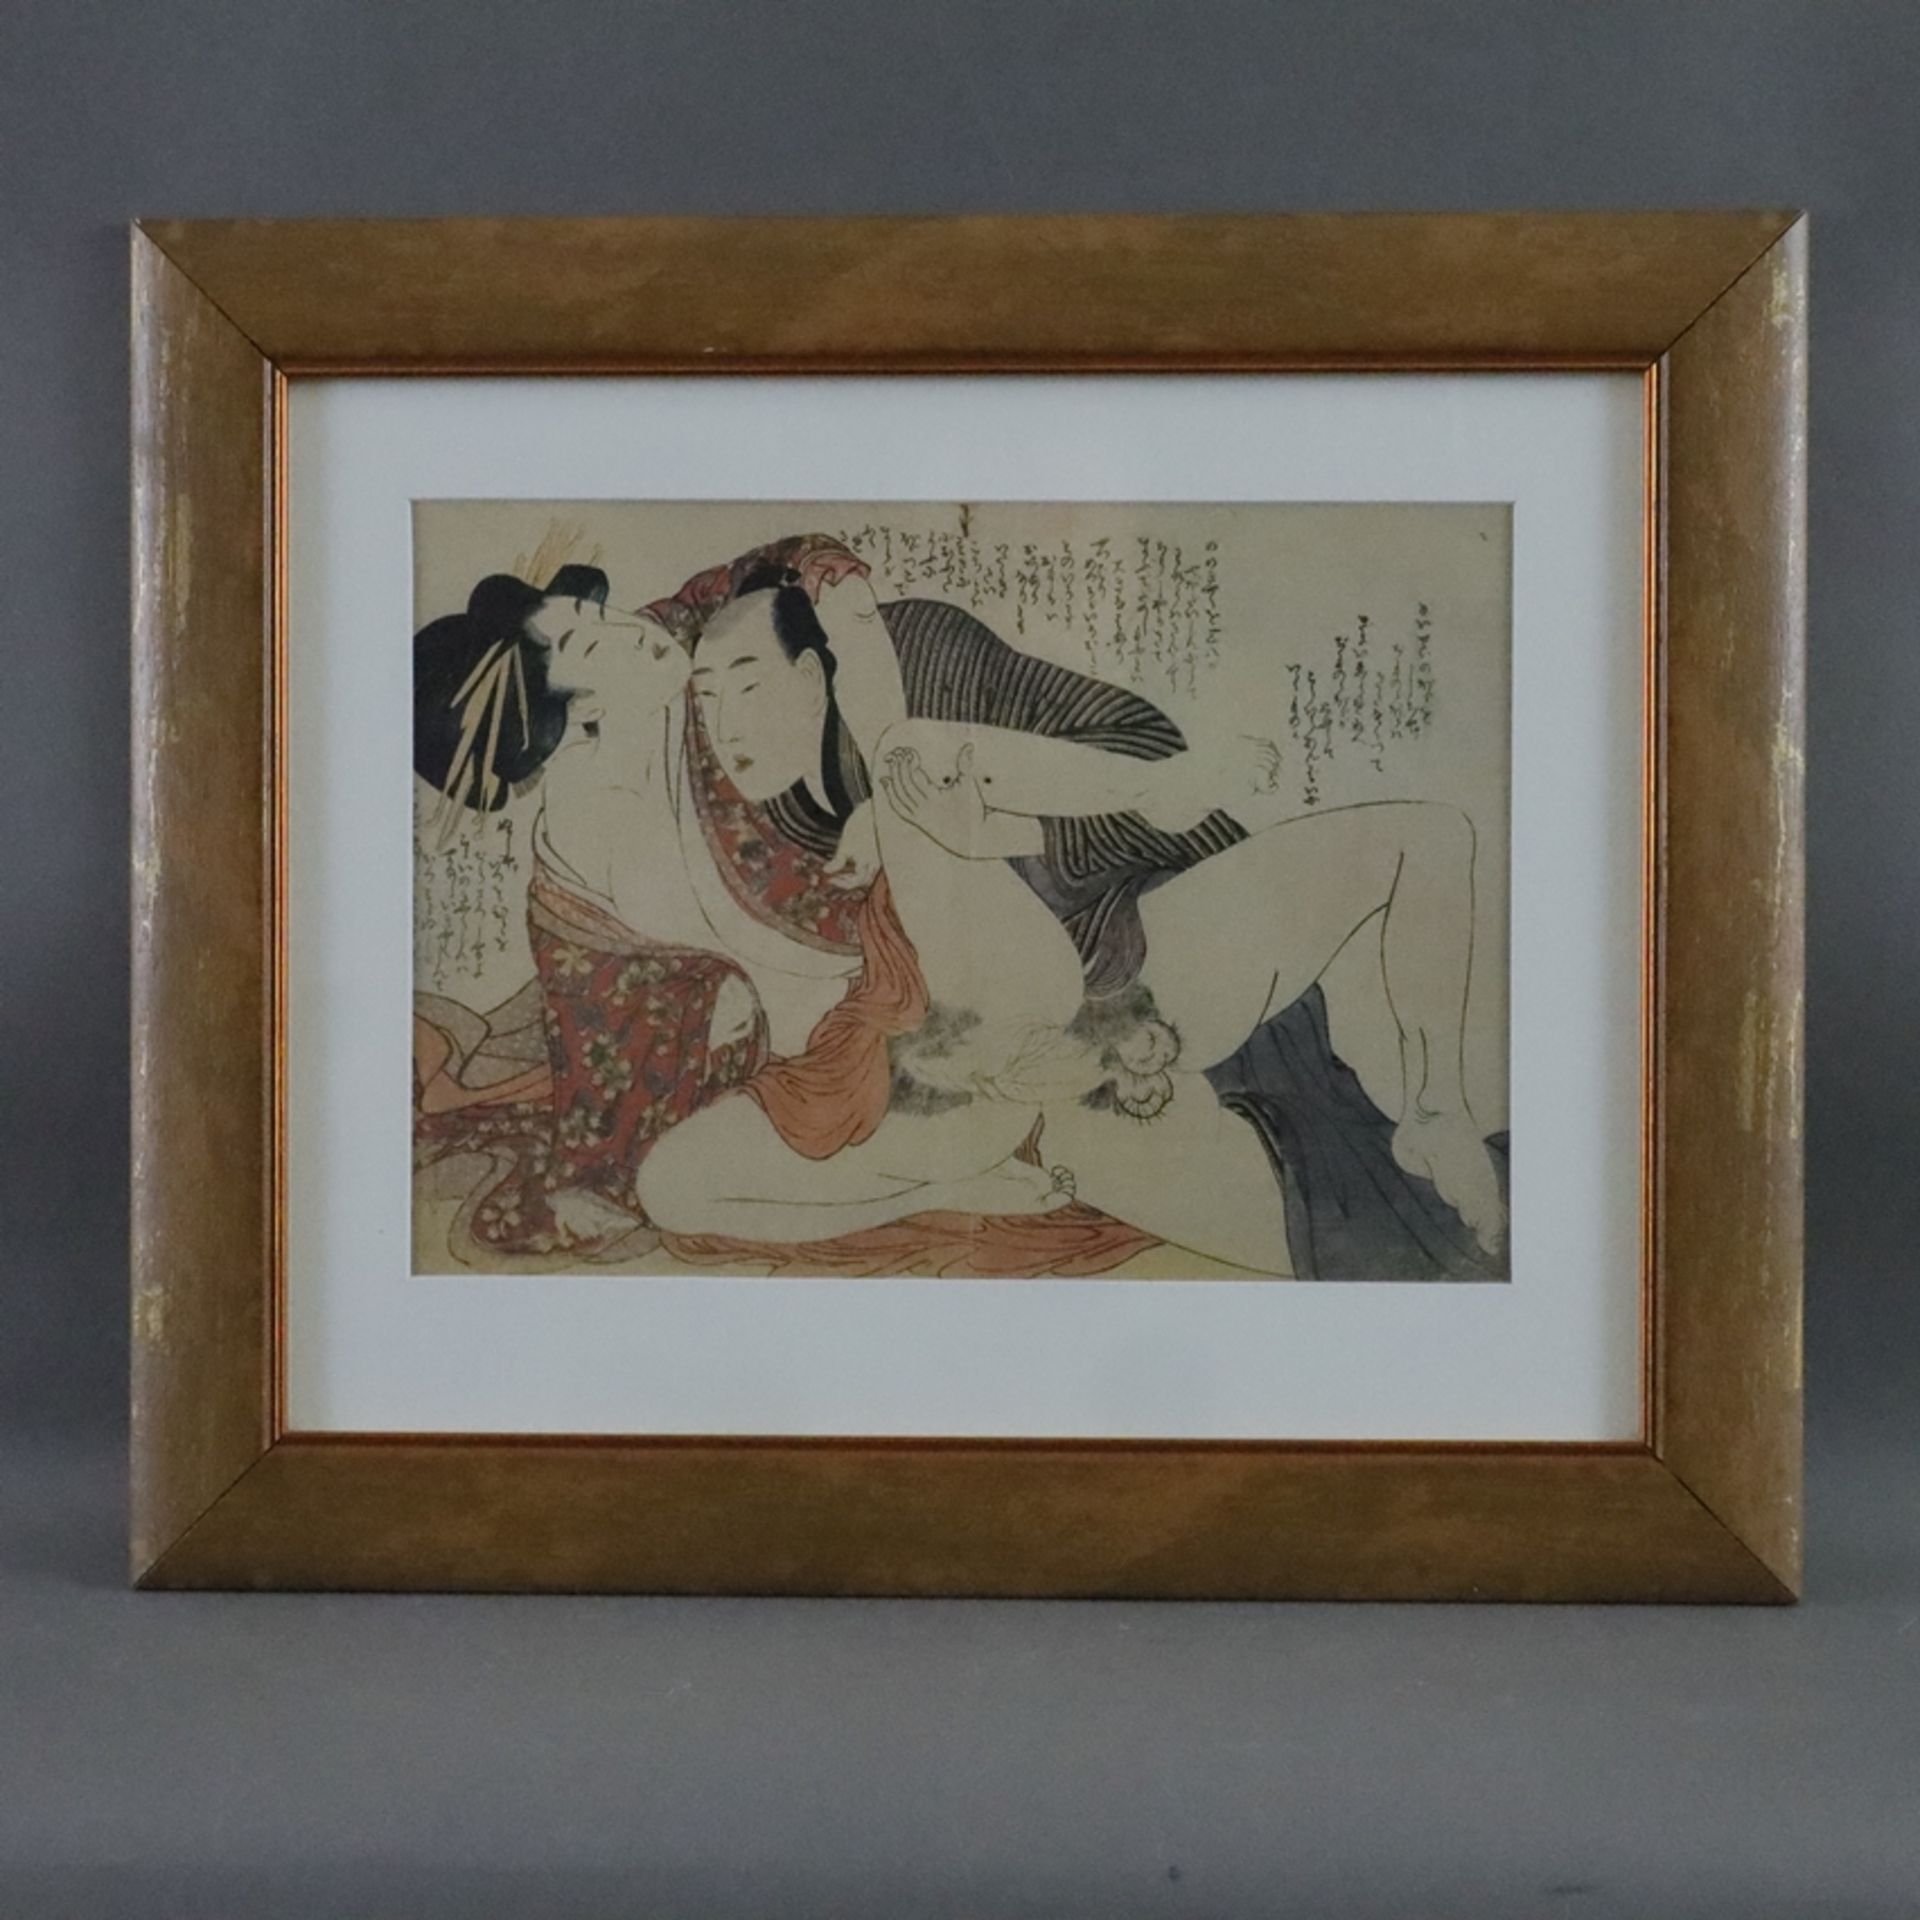 Kitagawa, Utamaro (1753-1806 japanischer Meister des klassischen japanischen Farbholzschnitts, nach - Image 2 of 5